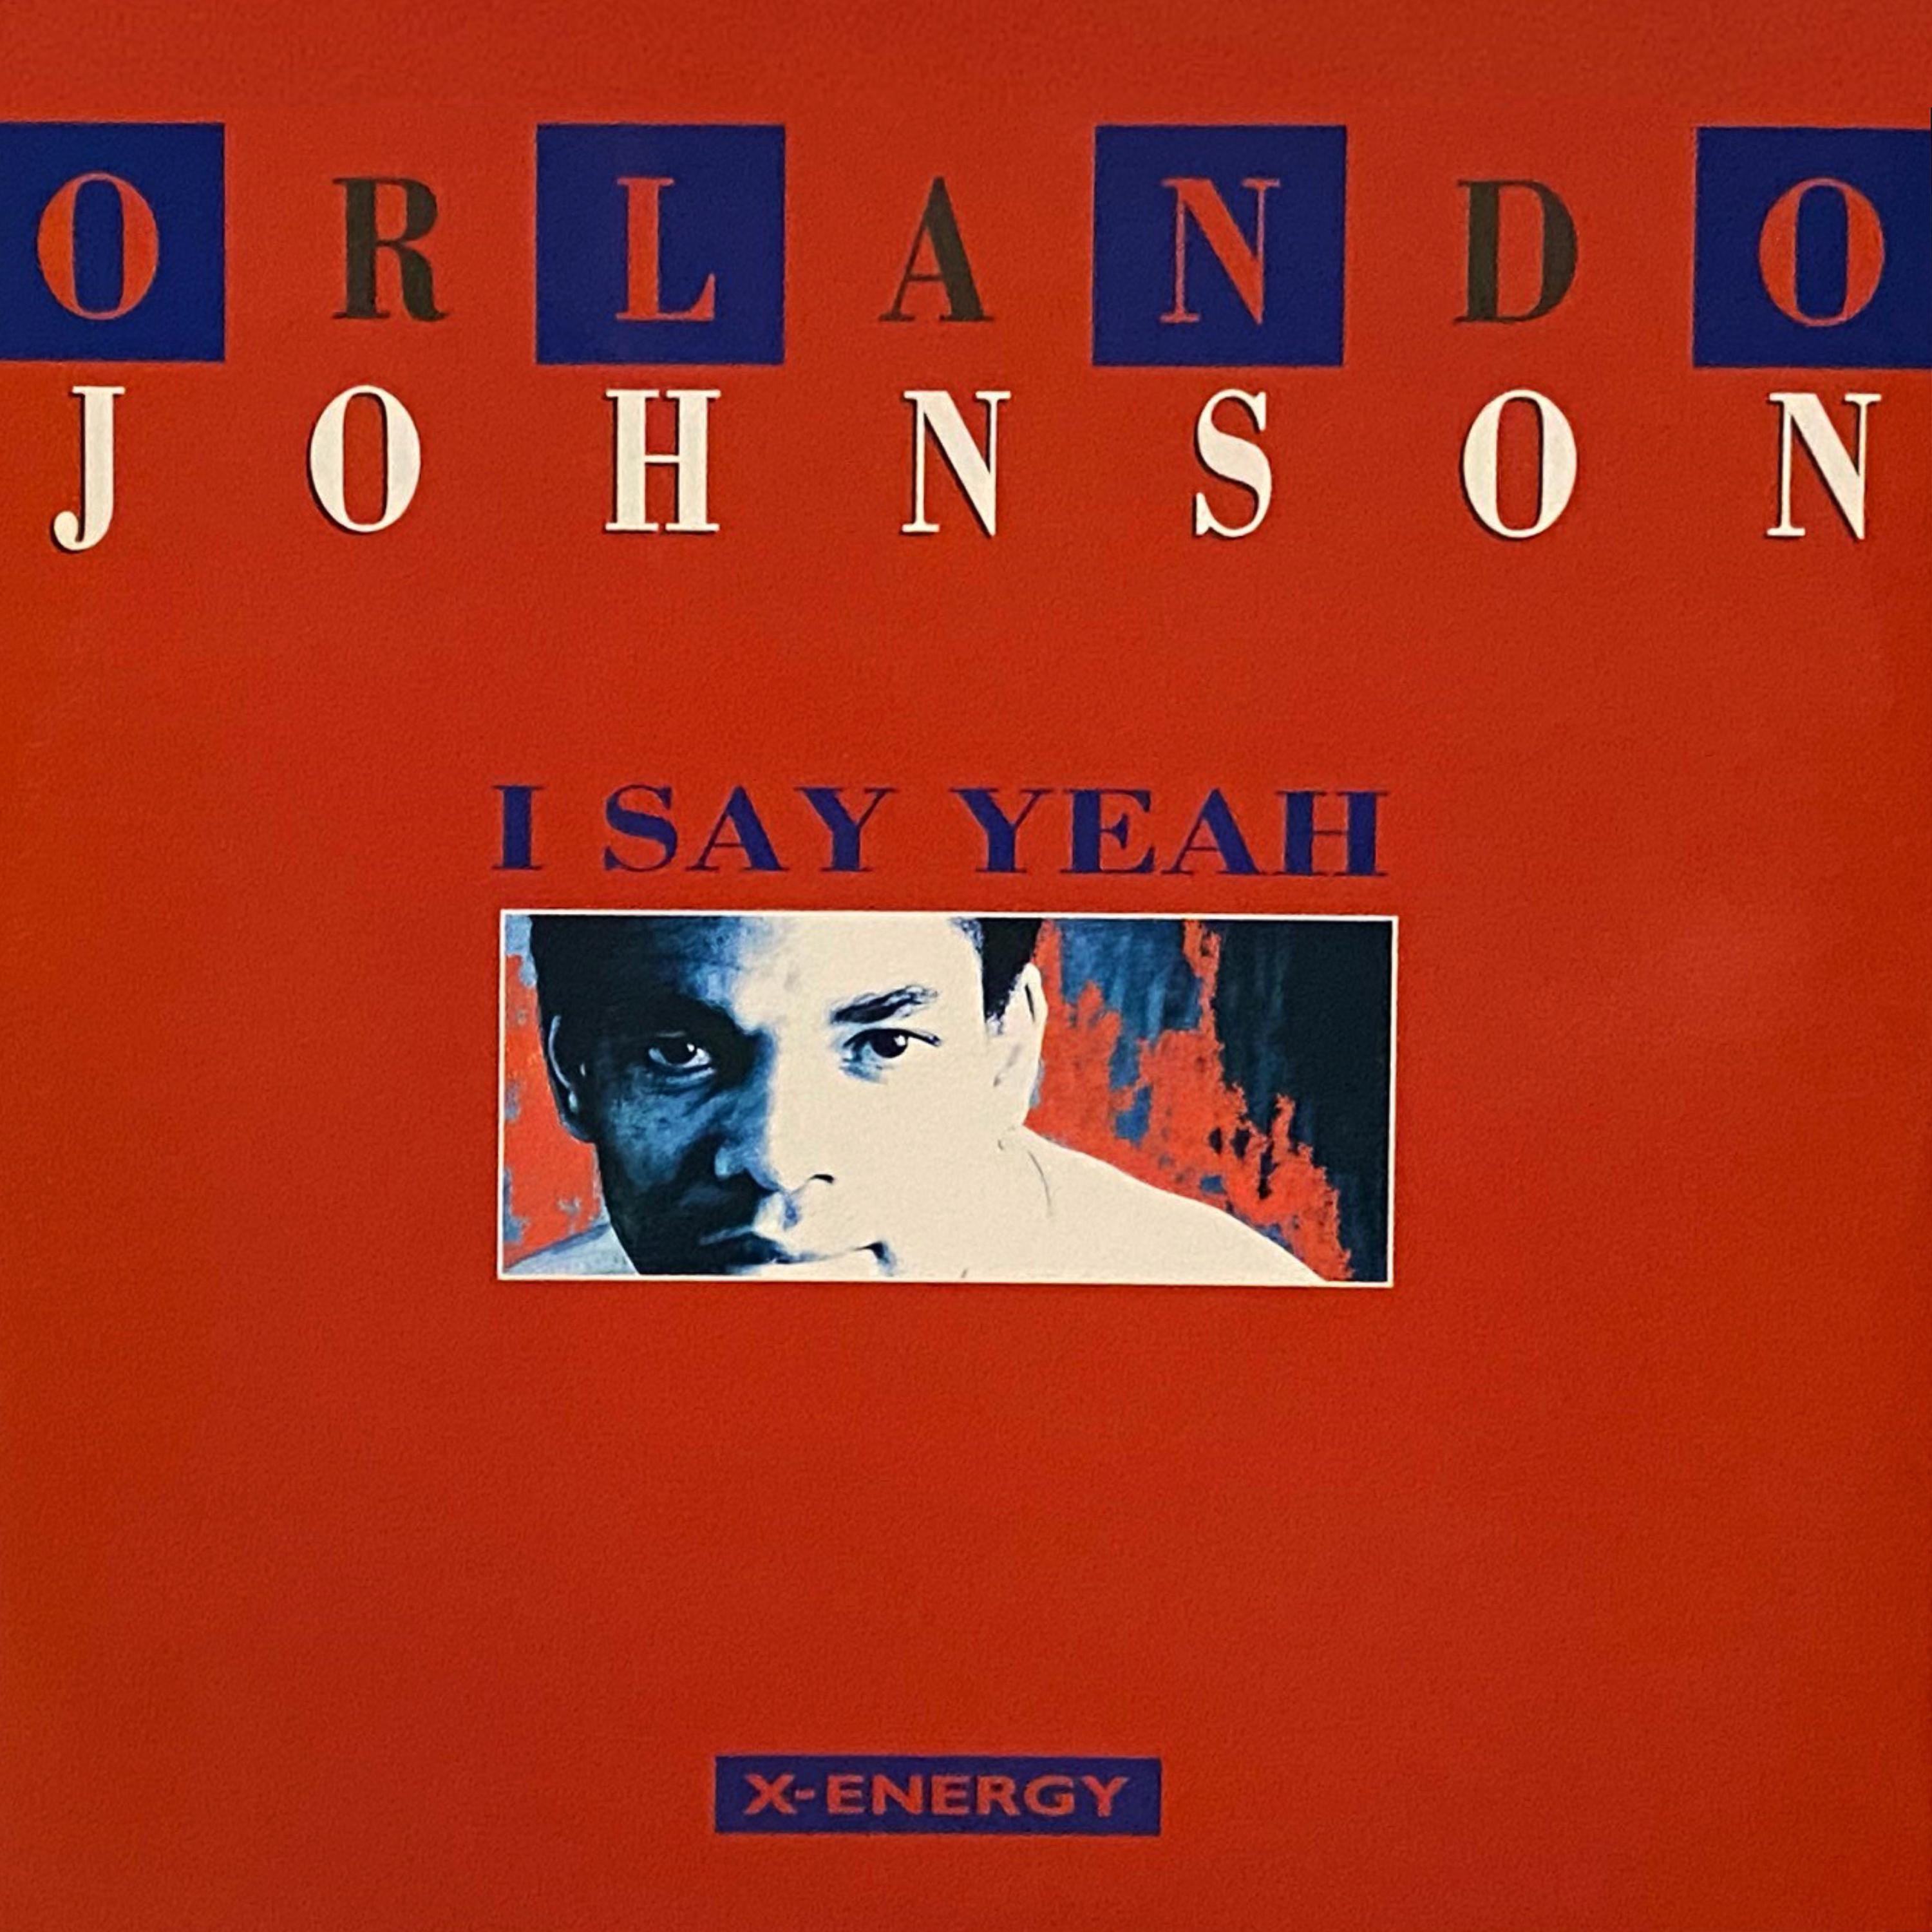 Orlando Johnson - I Say Yeah (Pow Power Mix)